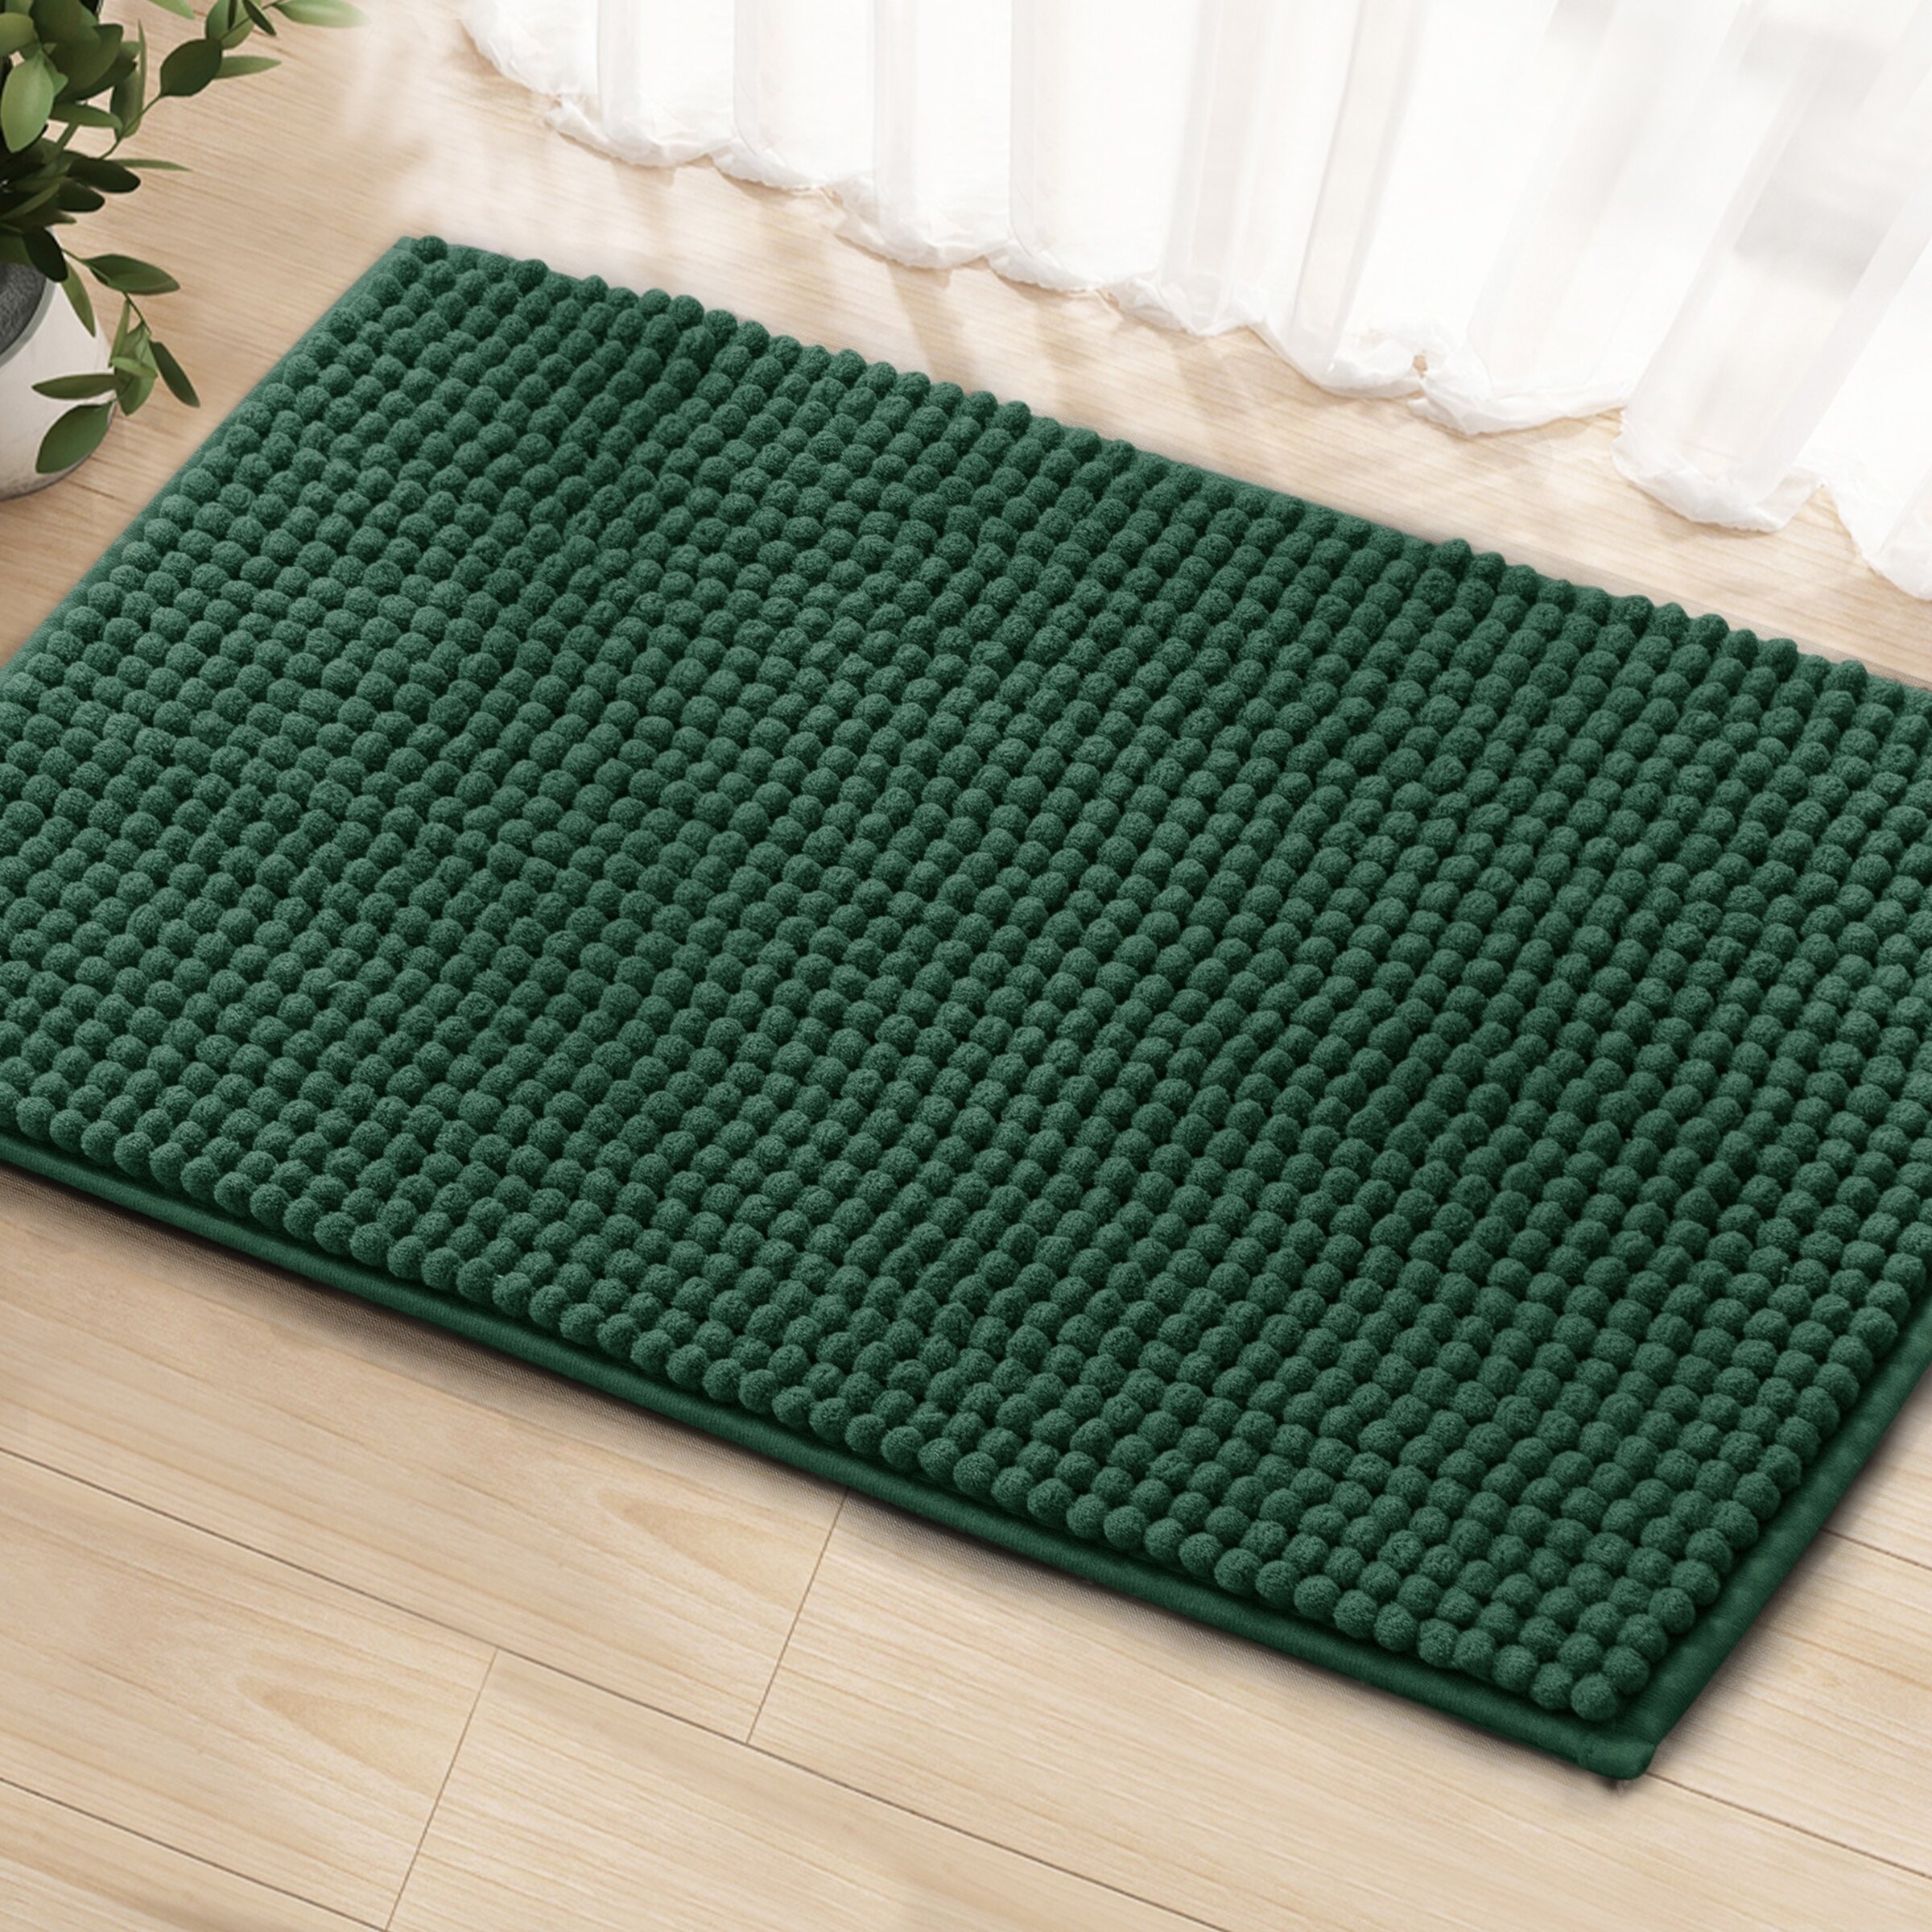 Green textured doormat on a wooden floor near a sheer curtain